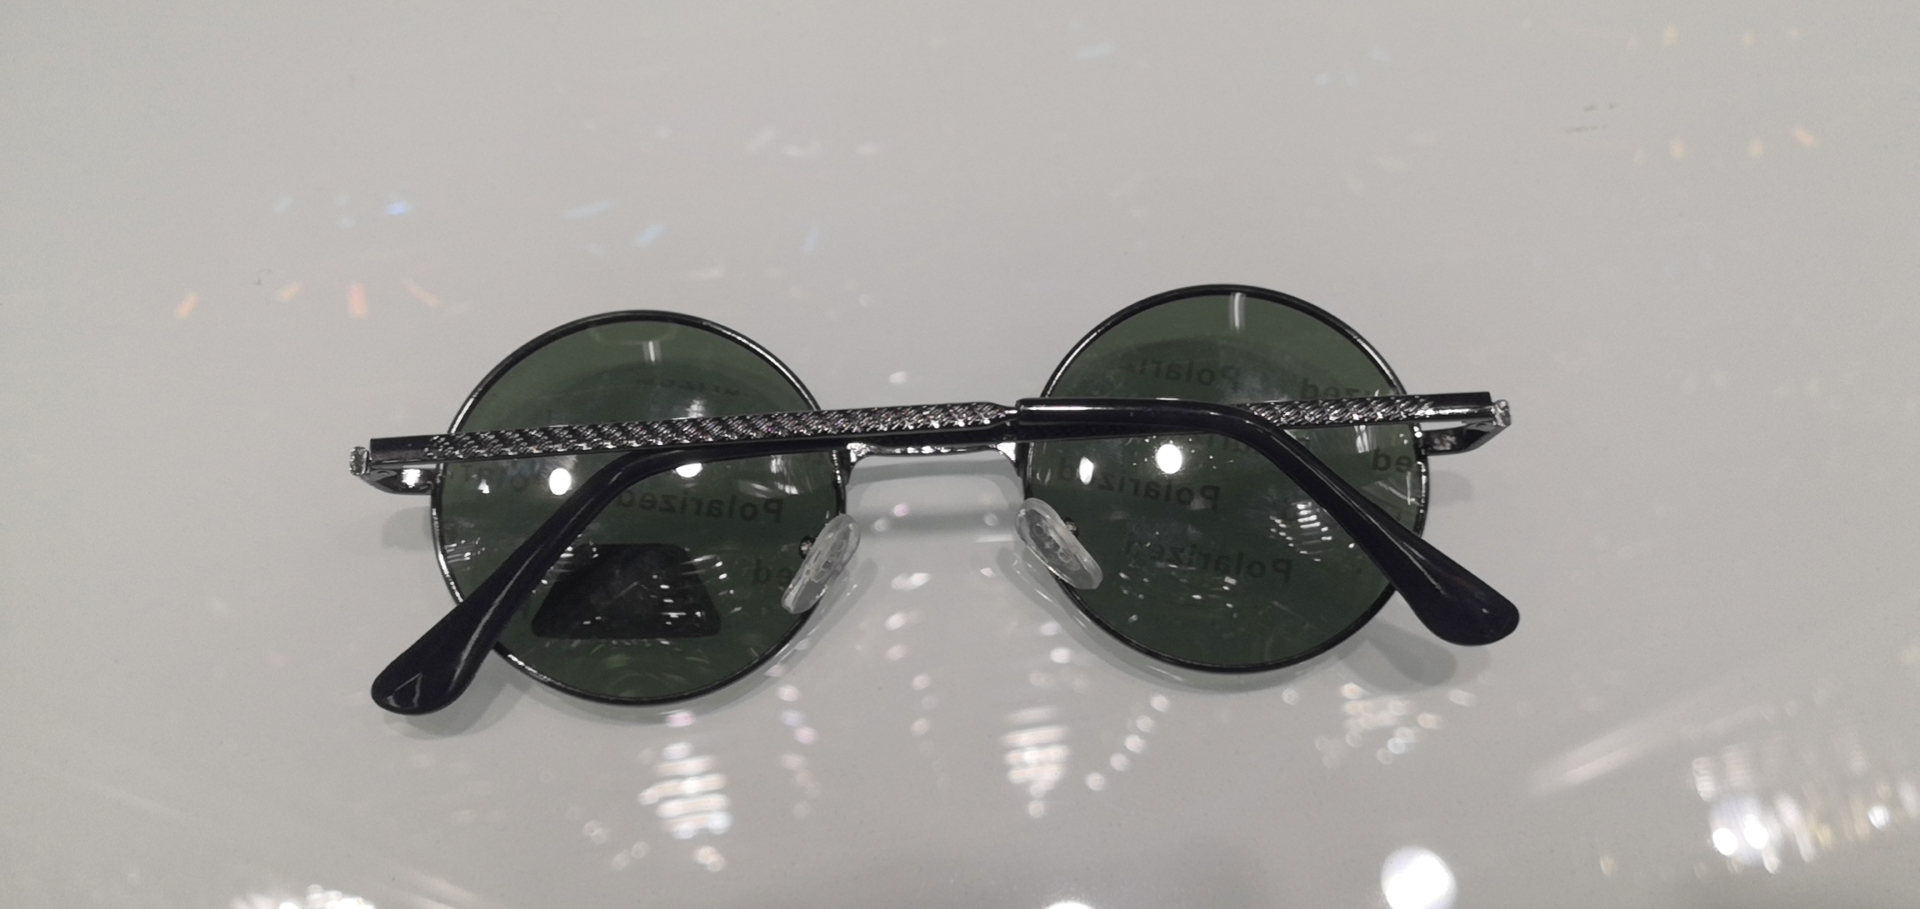 新品时尚大框墨镜圆框太阳镜偏光镜韩版网红潮人8042产品图